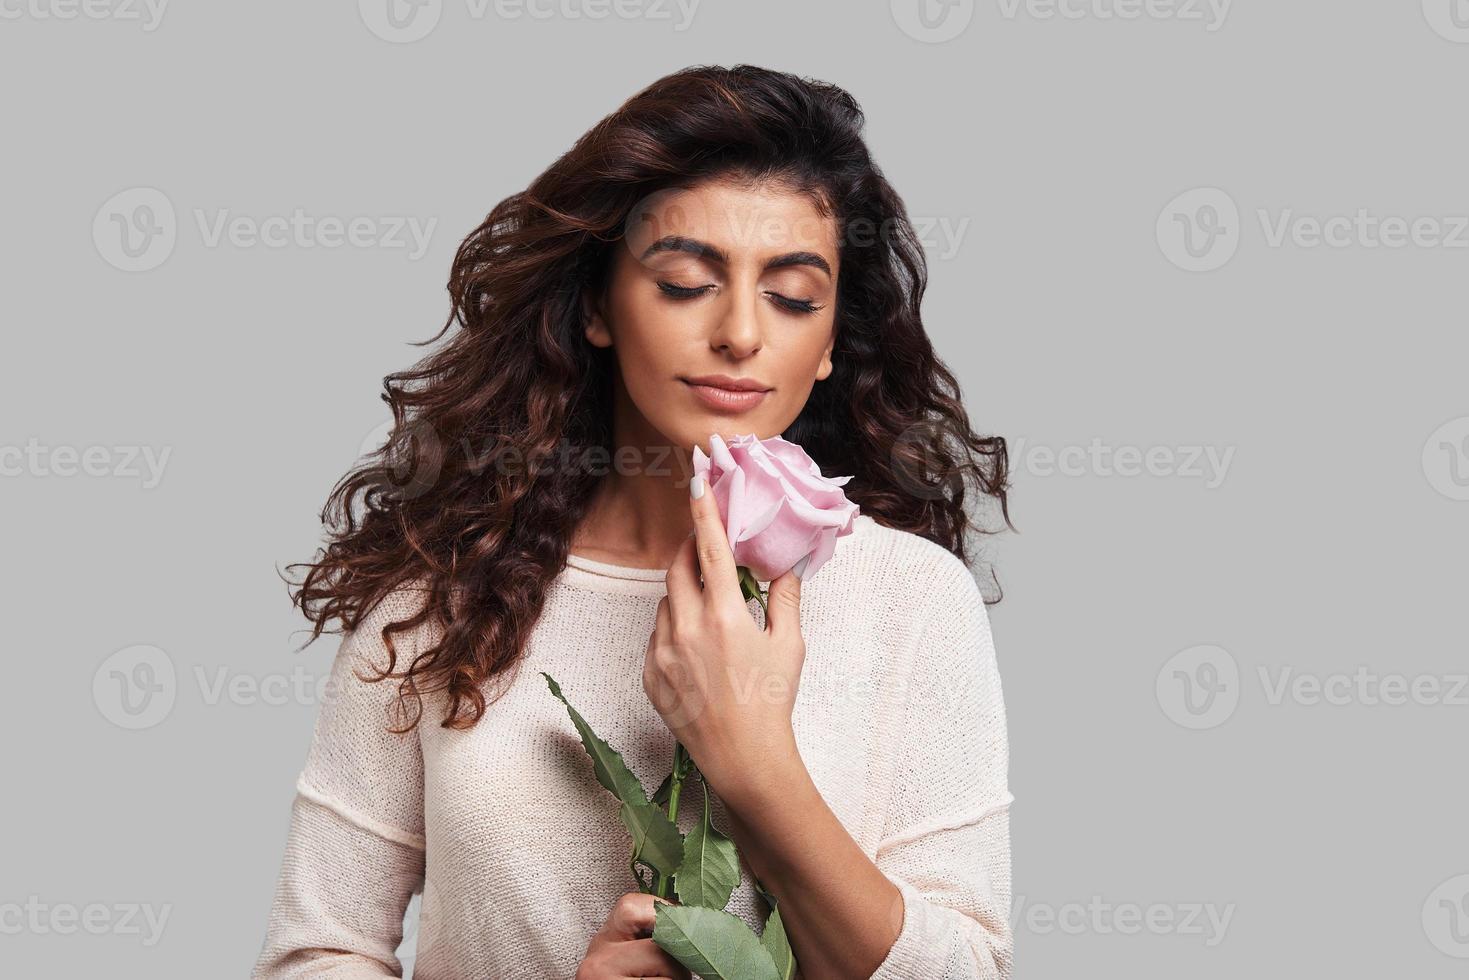 verloren in Träumen. Attraktive junge lächelnde Frau, die die Augen geschlossen hält und eine Blume hält, während sie vor grauem Hintergrund steht foto